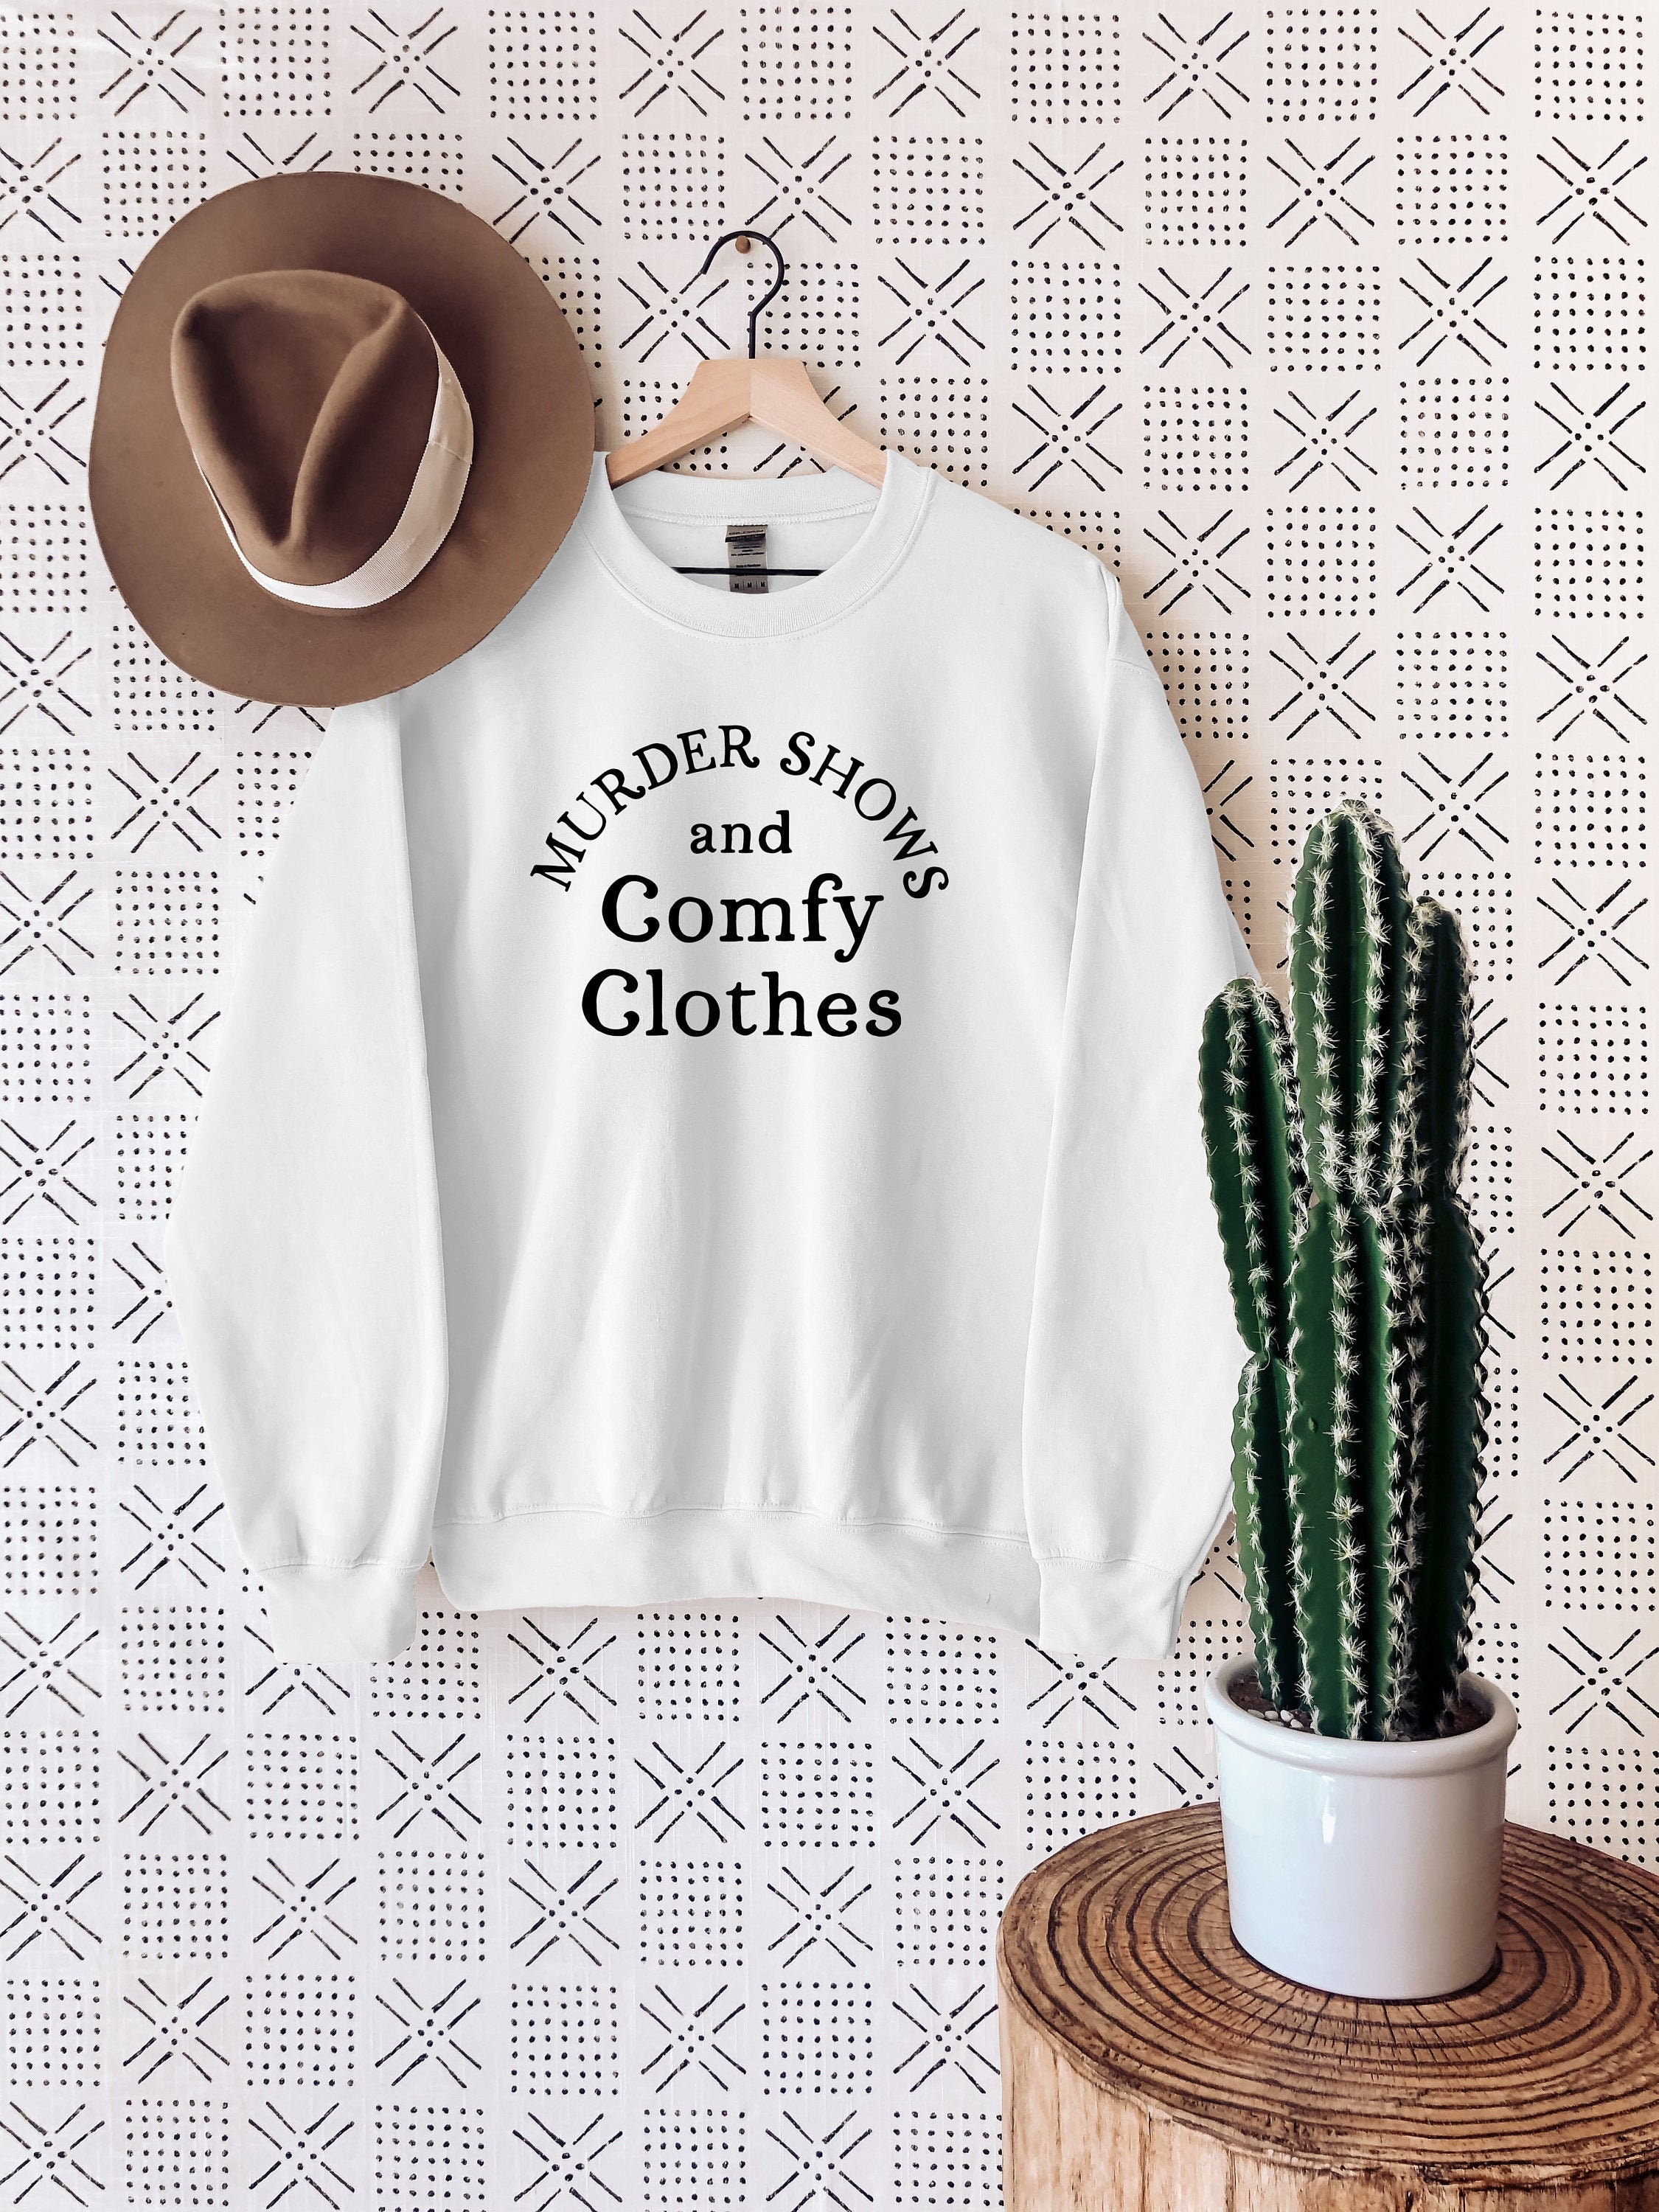 Comfy Clothes -  Canada